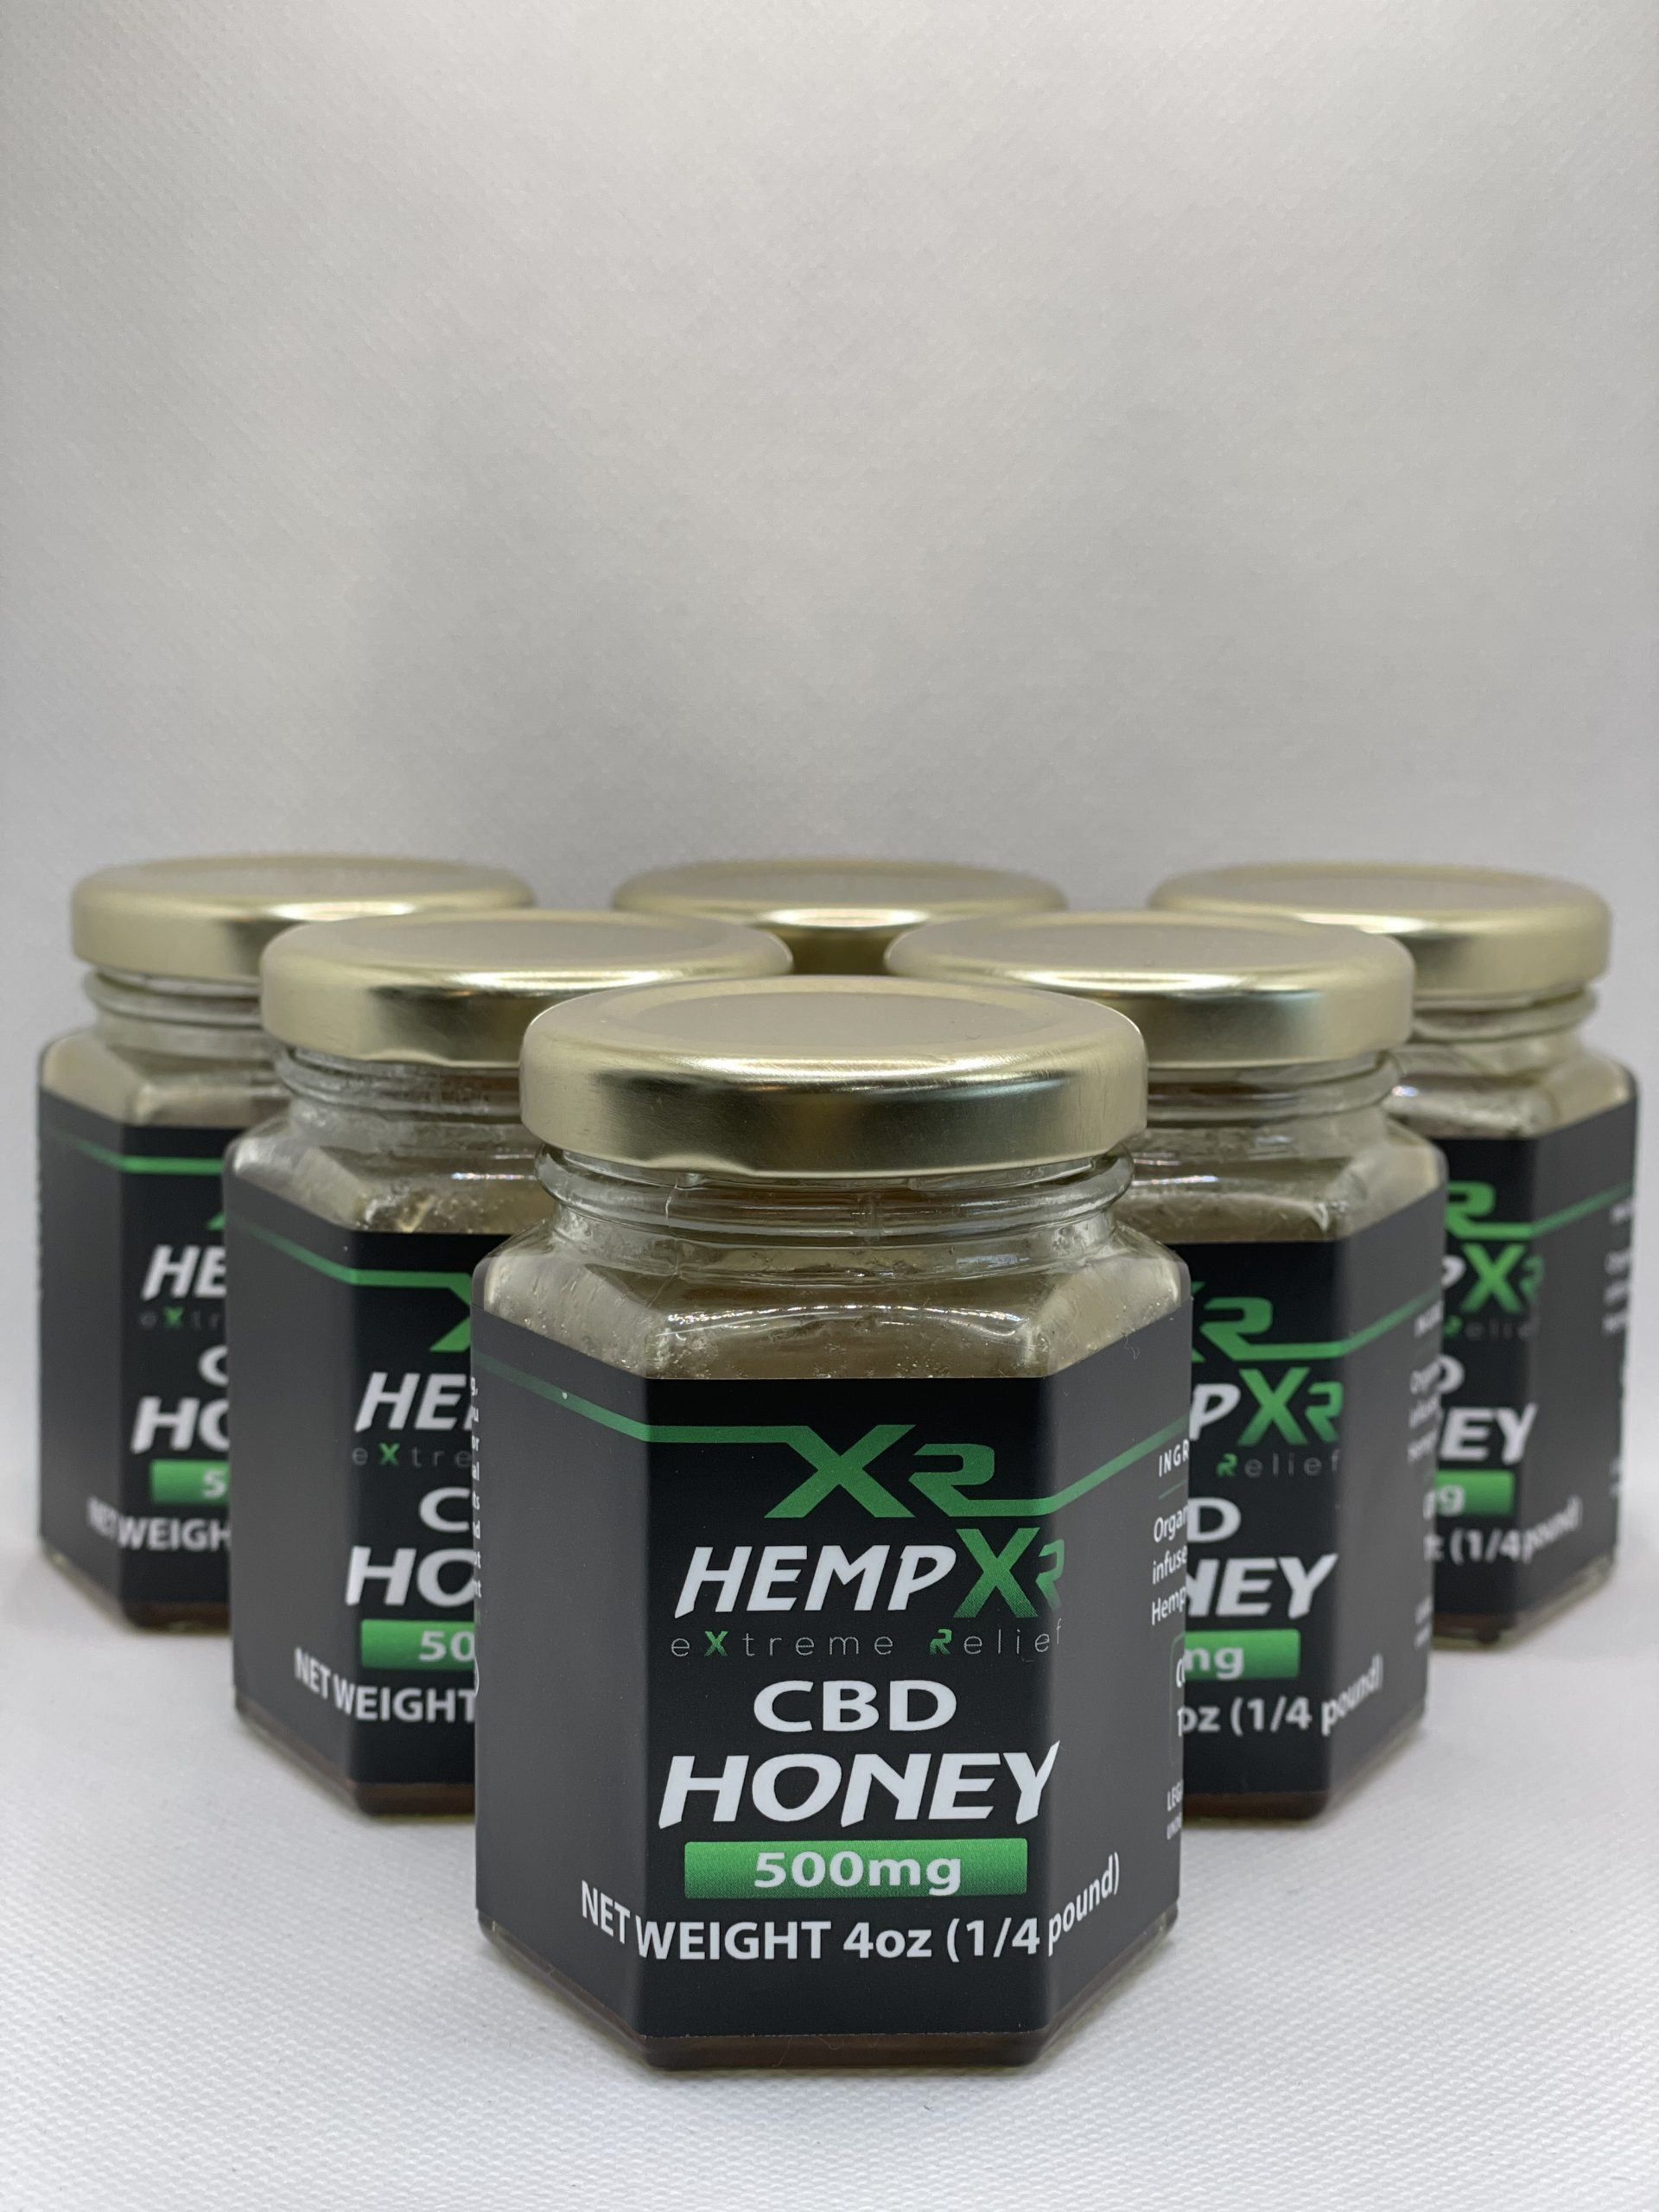 Hemp Xr Cbd Honey 500mg Hemp Xr